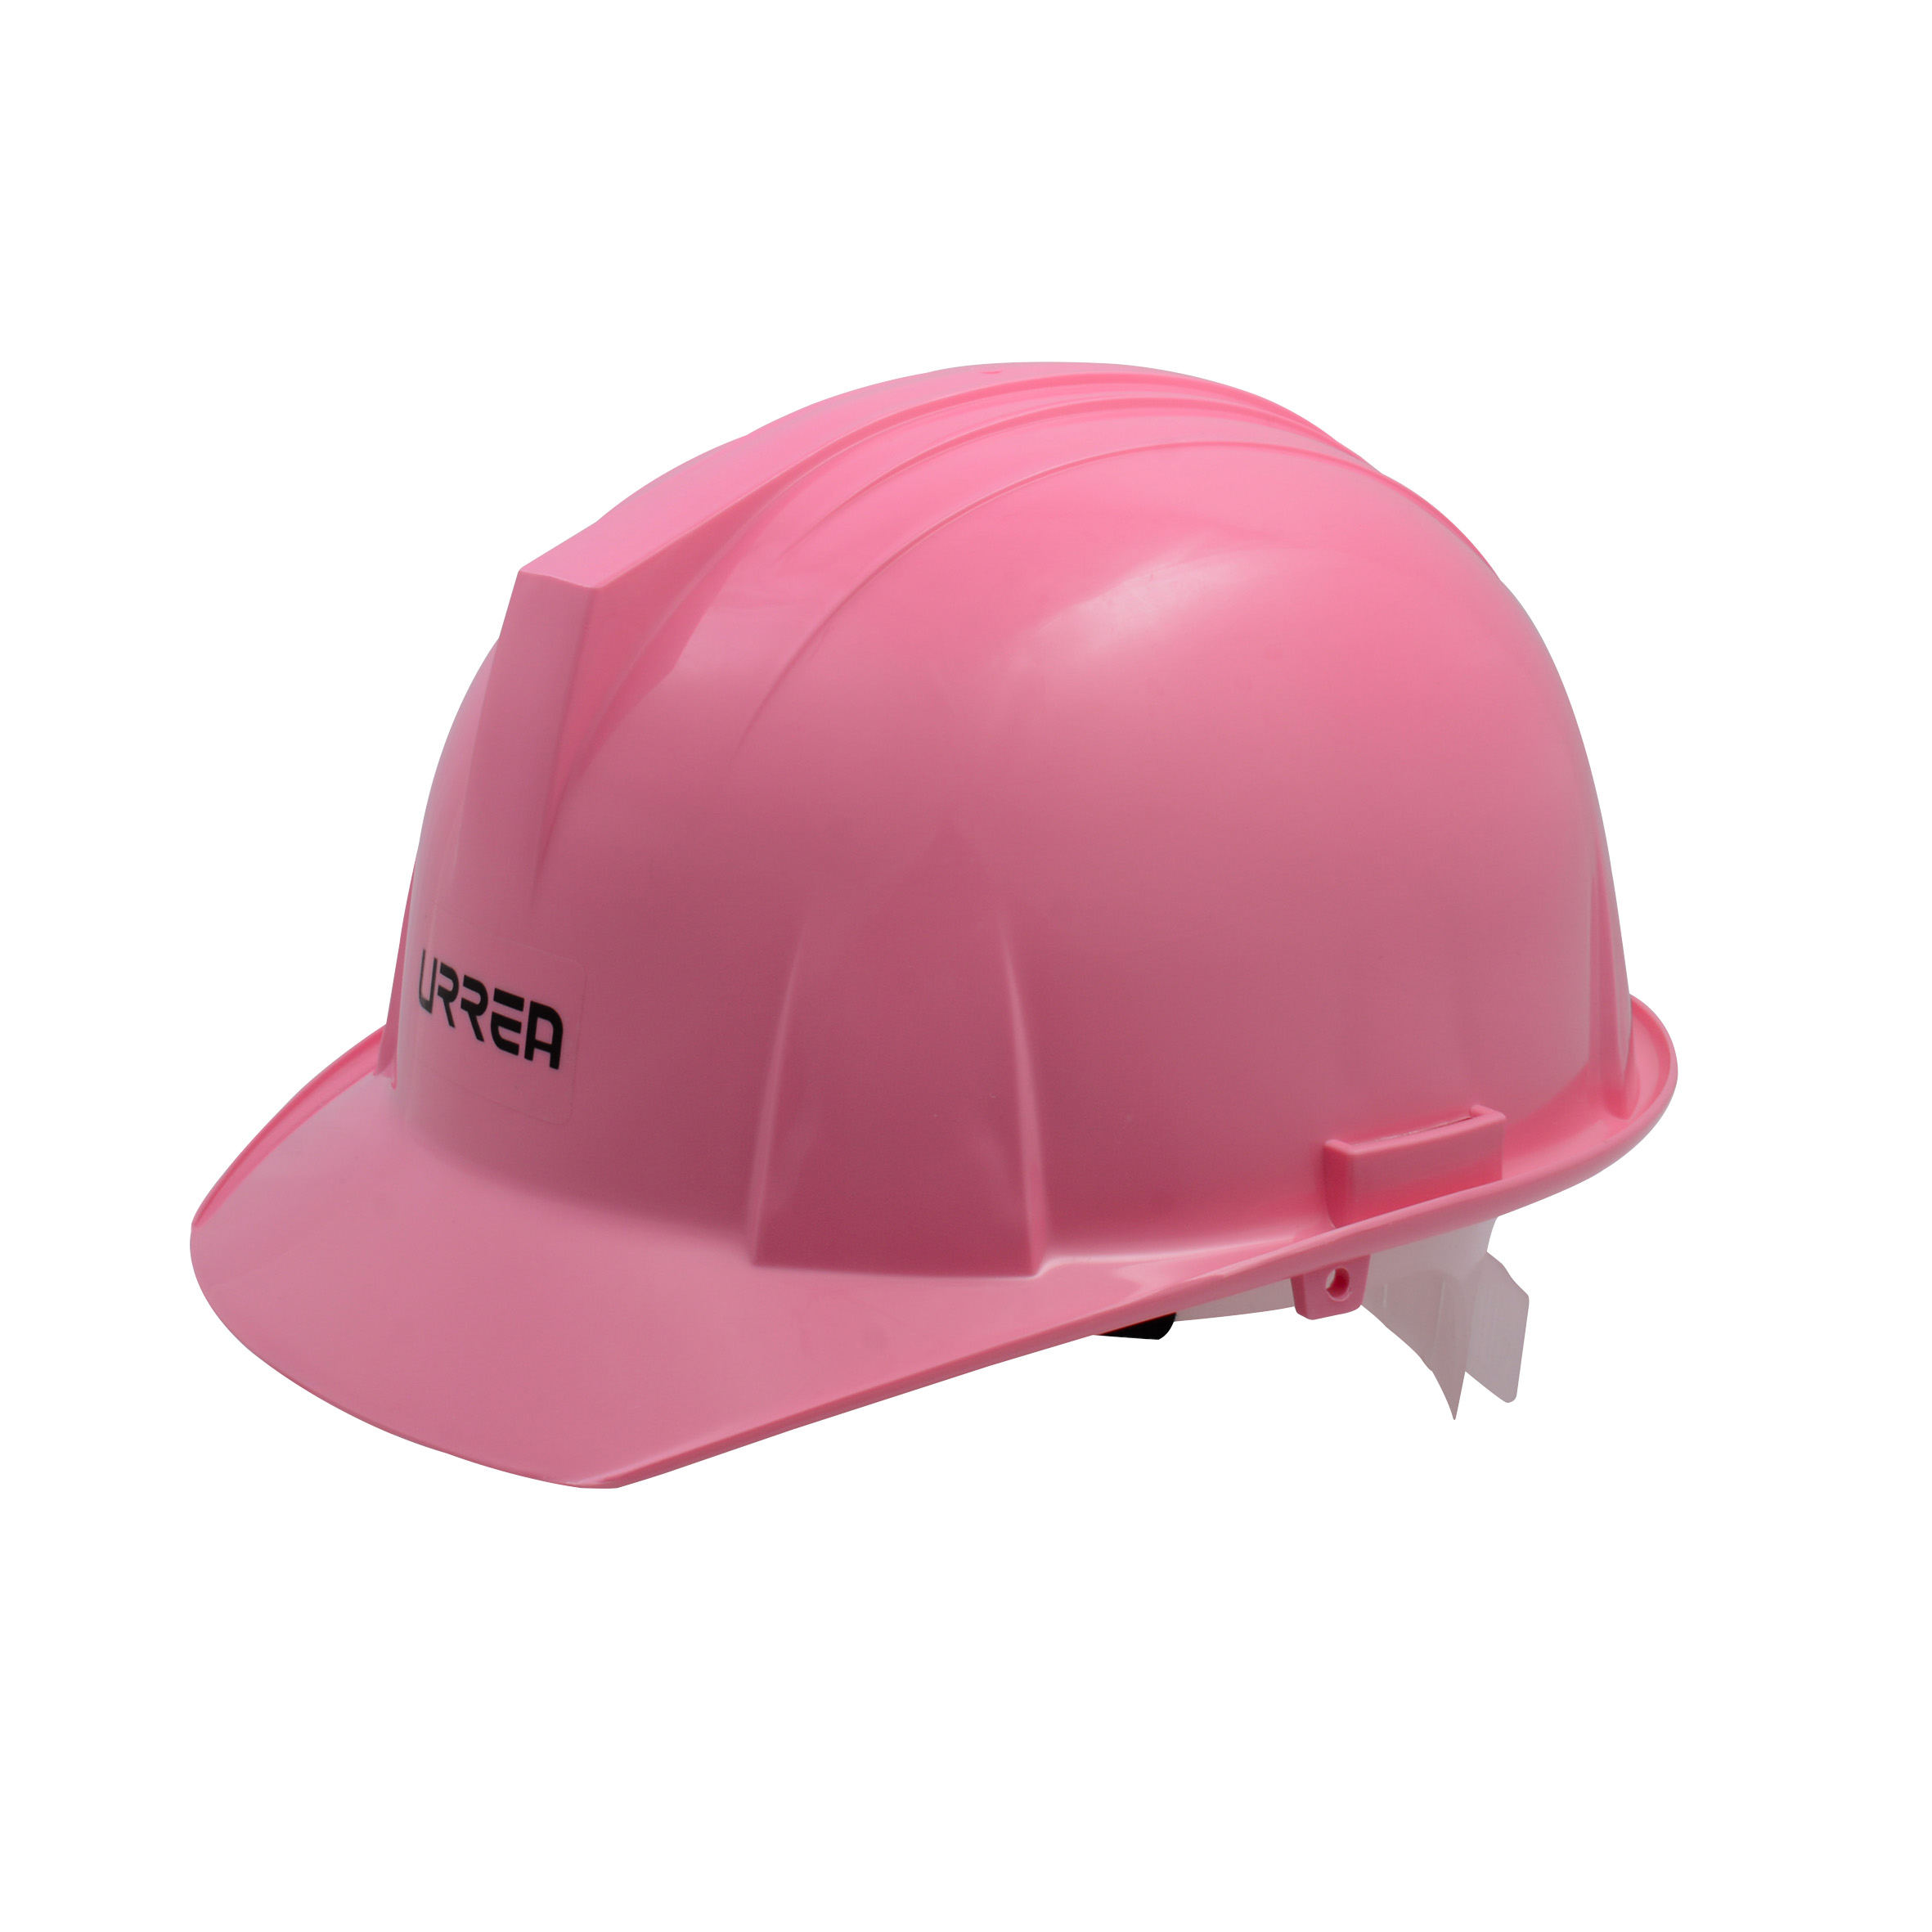 Imagen para Casco de seguridad con ajustede intervalos color rosa de Grupo Urrea